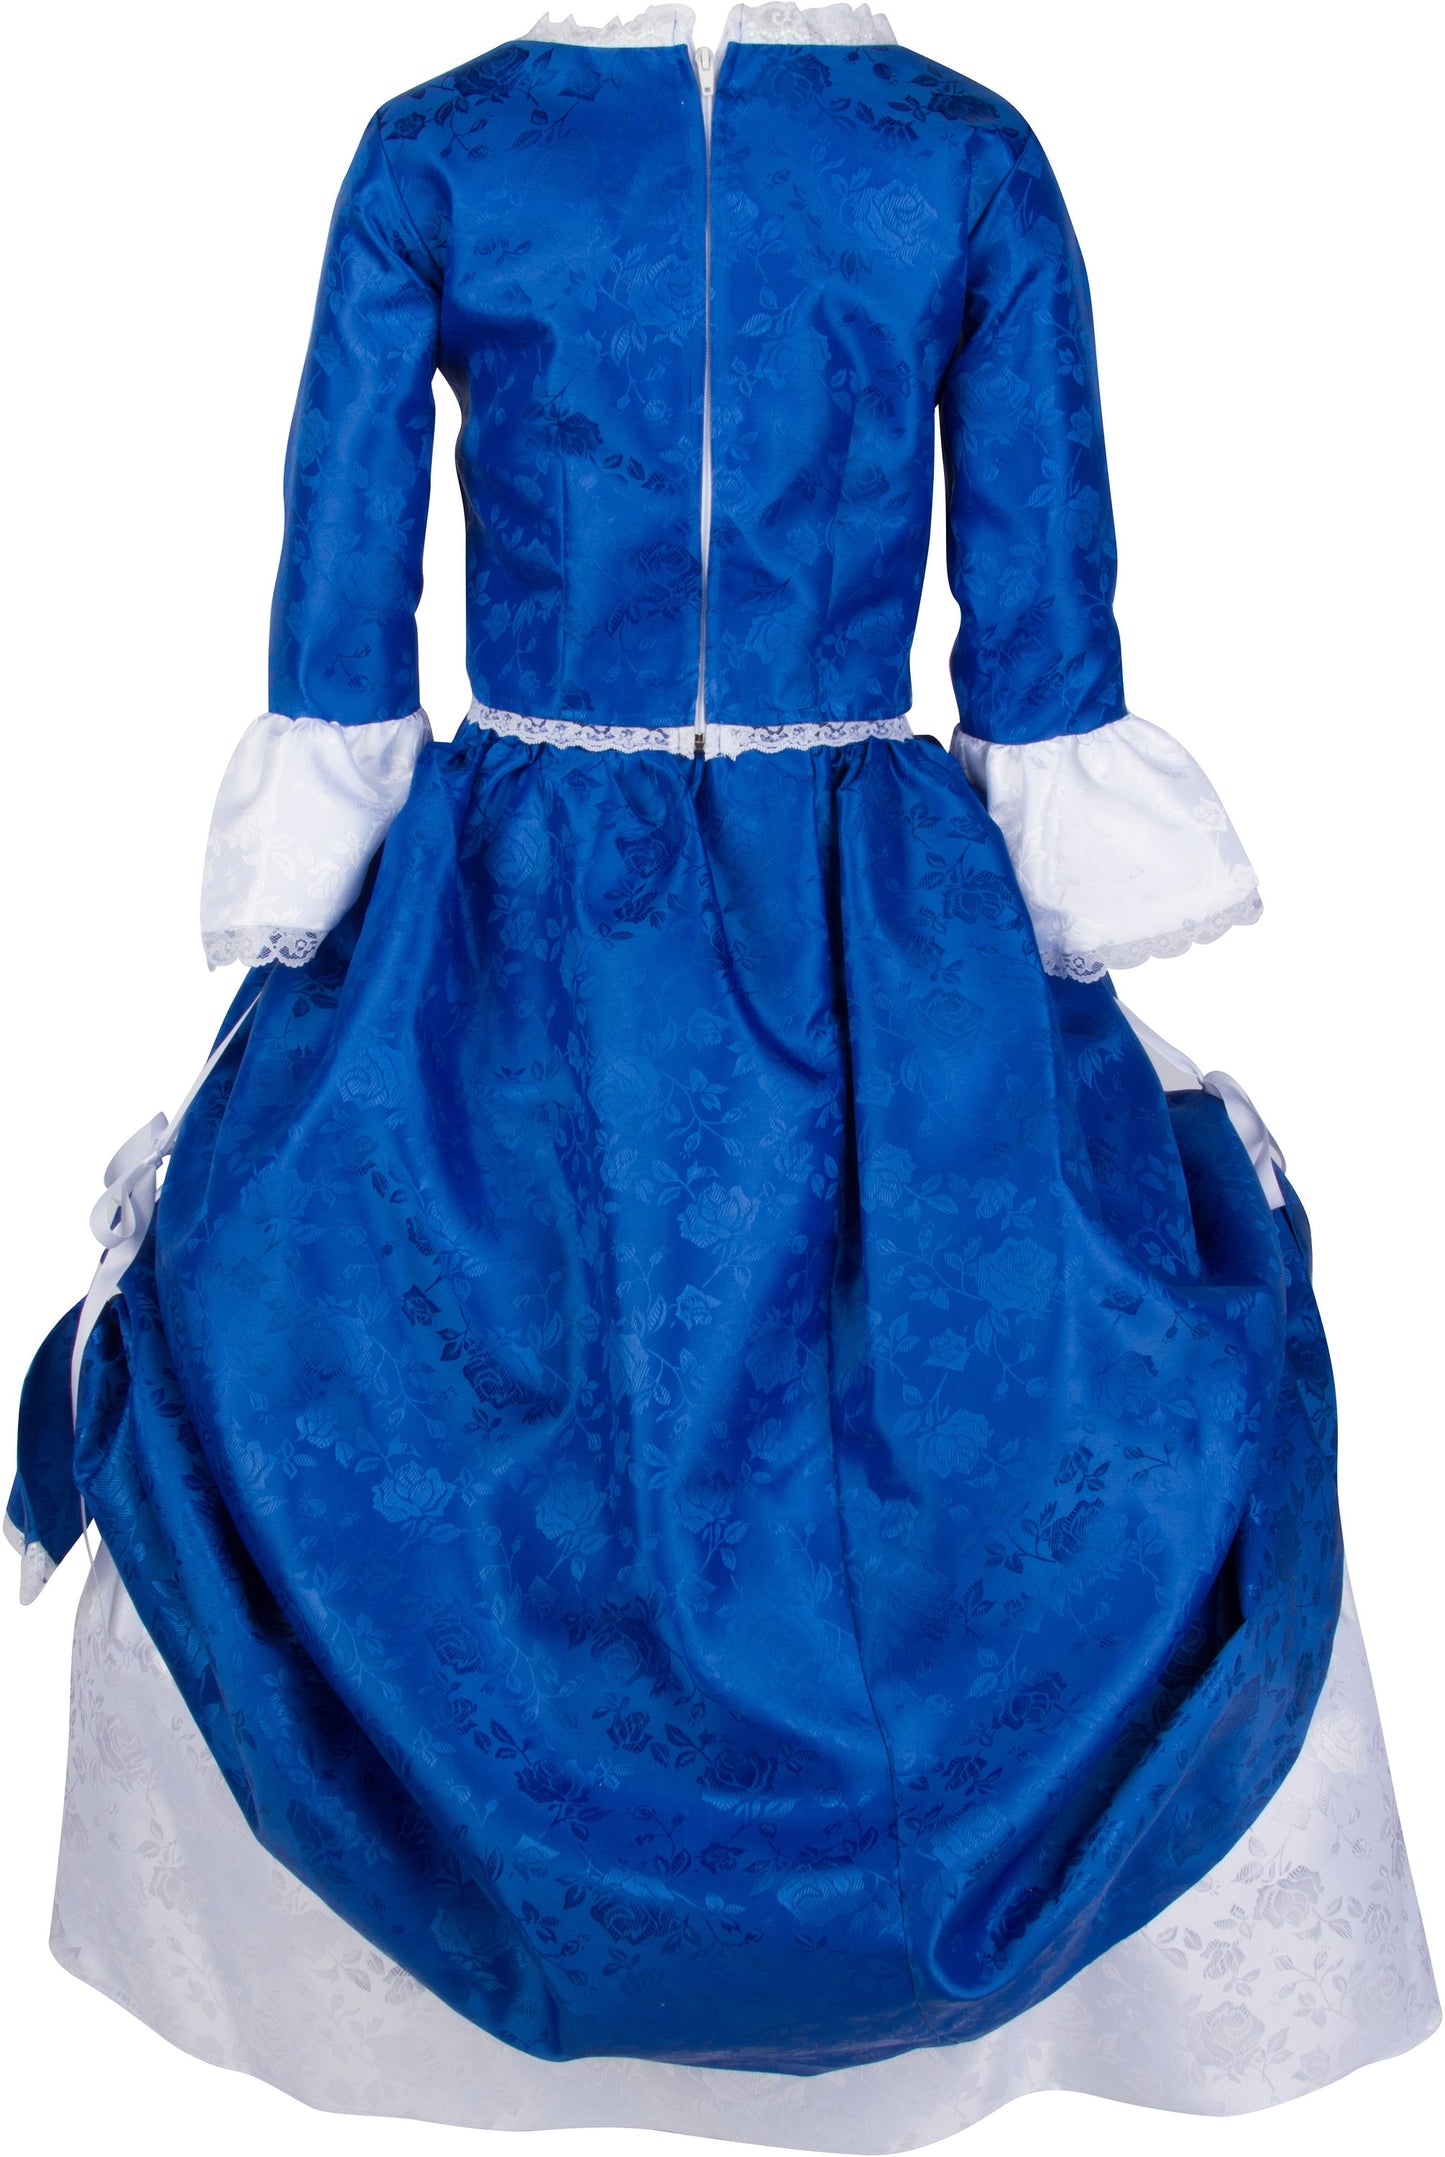 Children’s Betsy Ross Costume